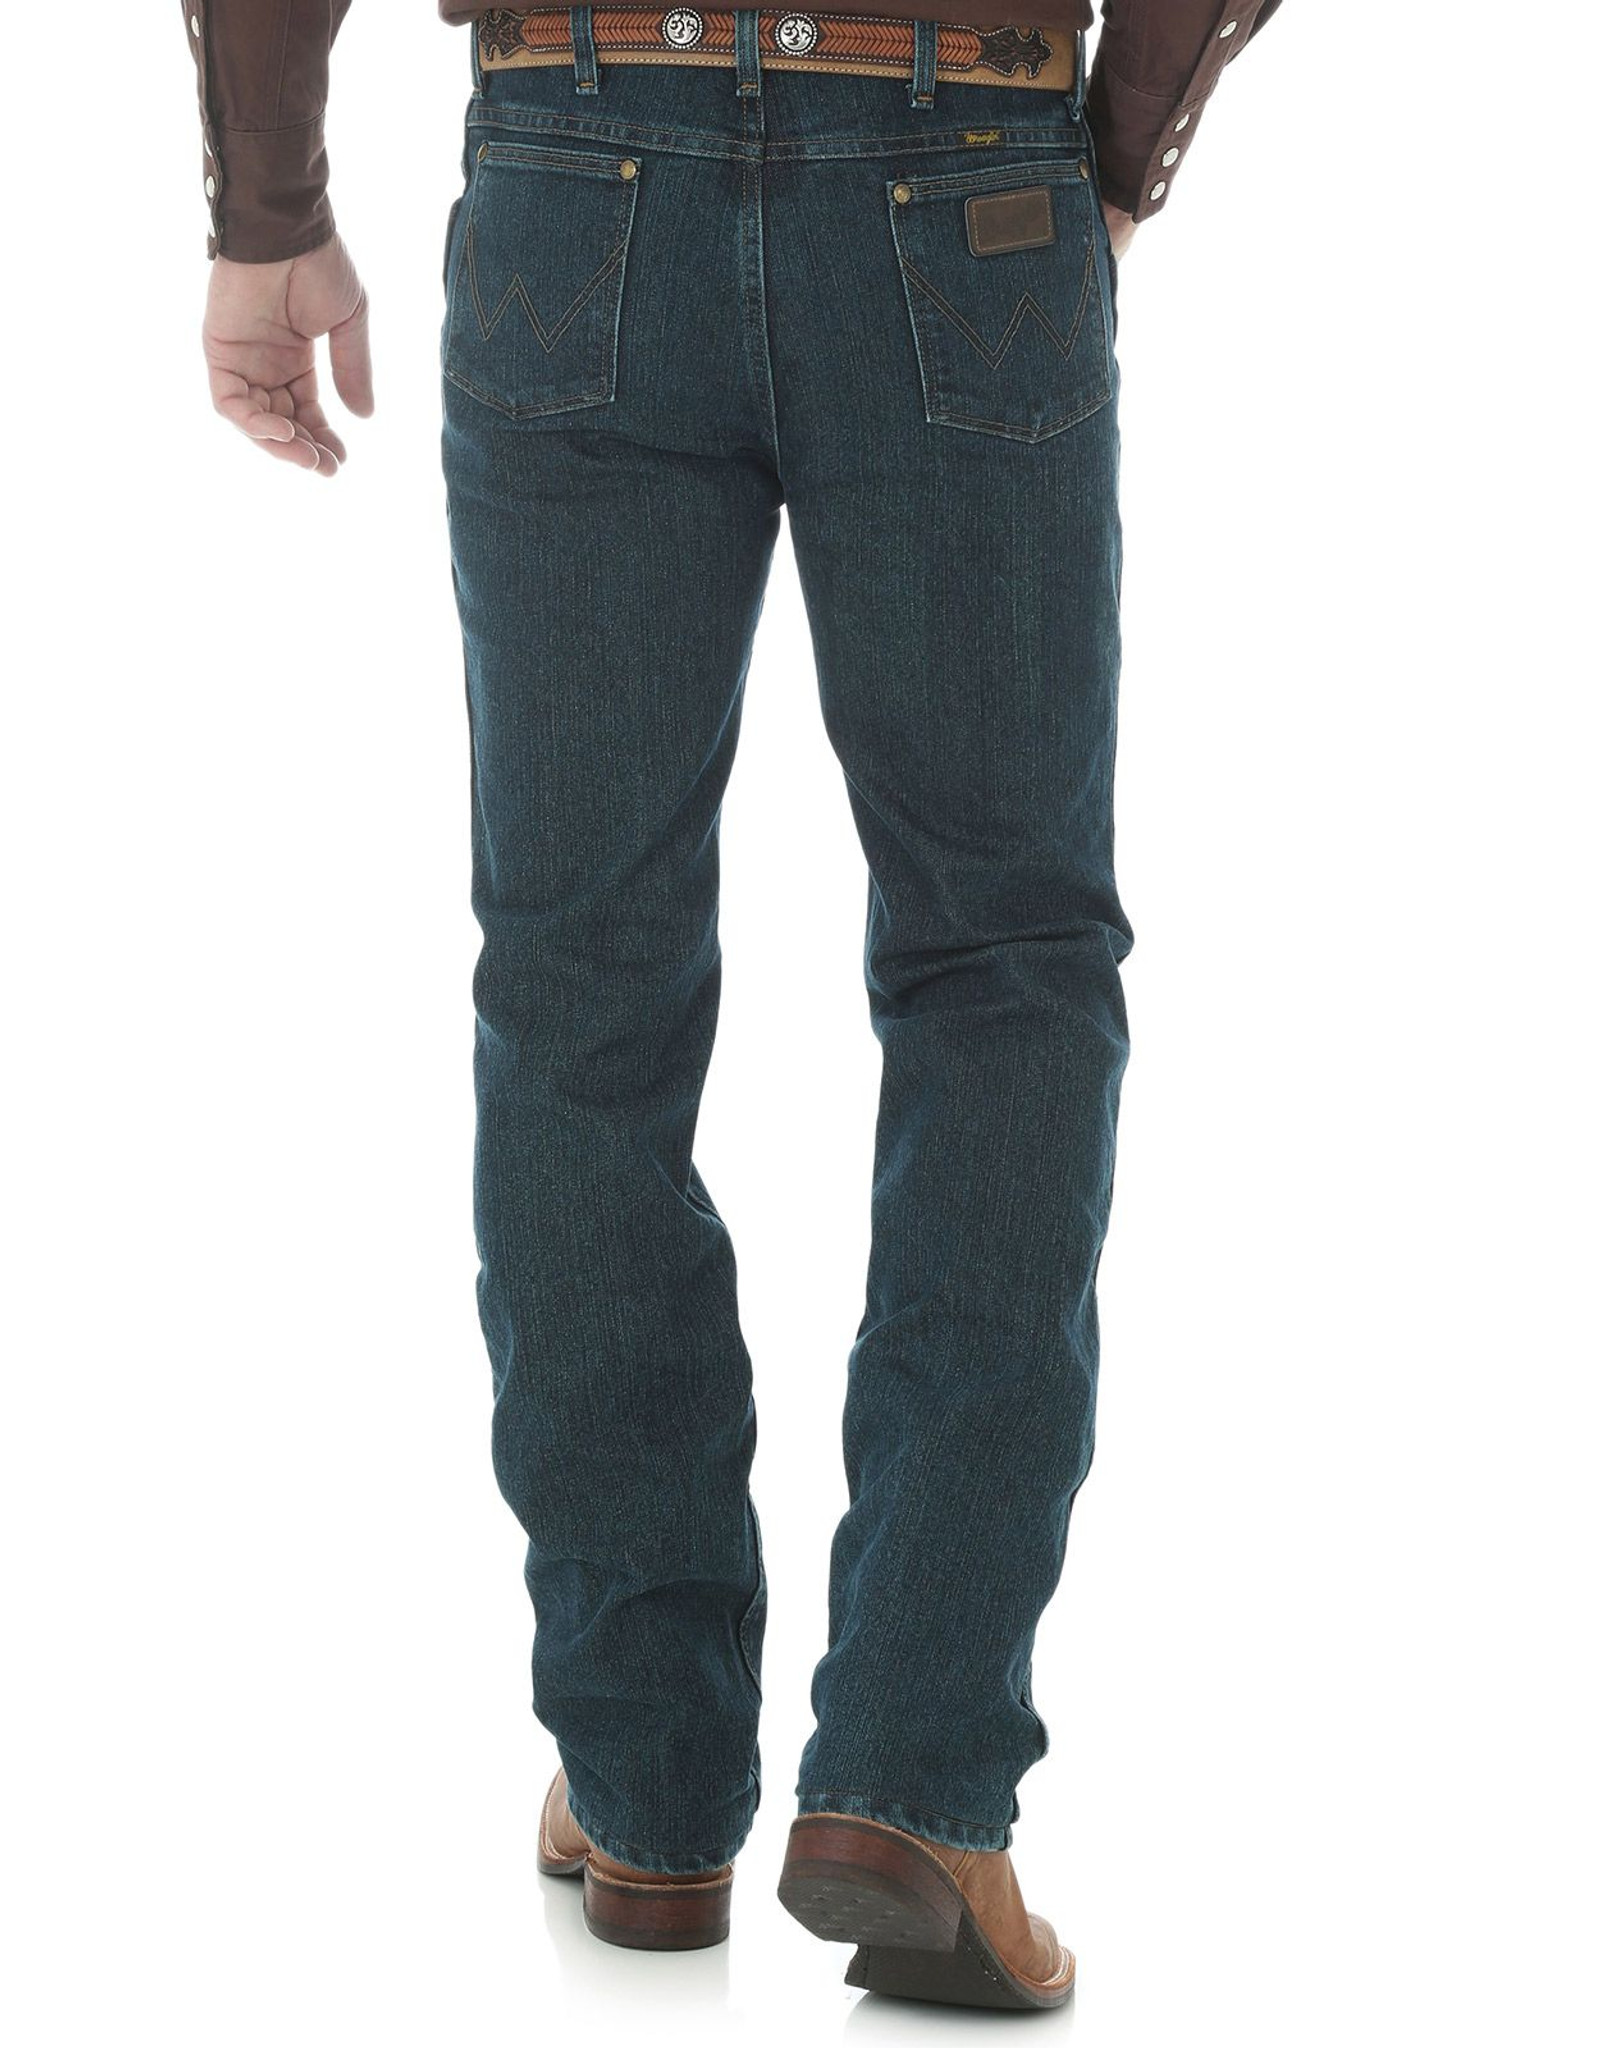 Wrangler 36 Slim Fit Dark Wash Jeans for Men from Langston's